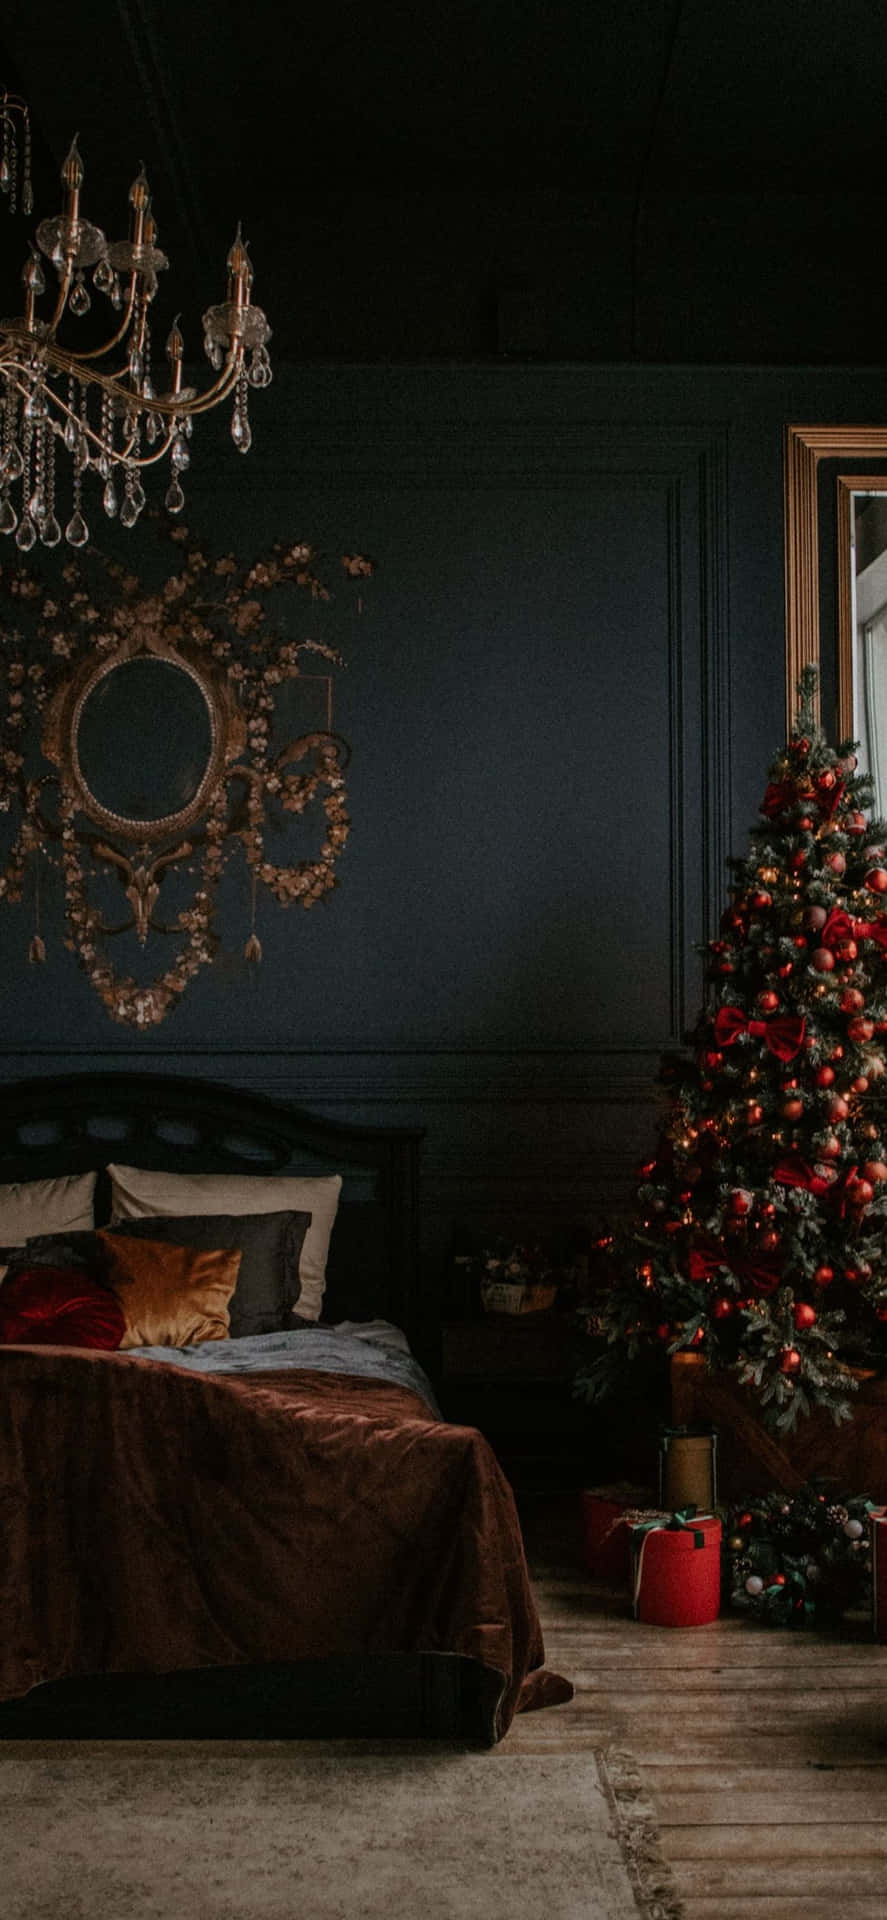 Dark_ Christmas_ Bedroom_ Decor Wallpaper